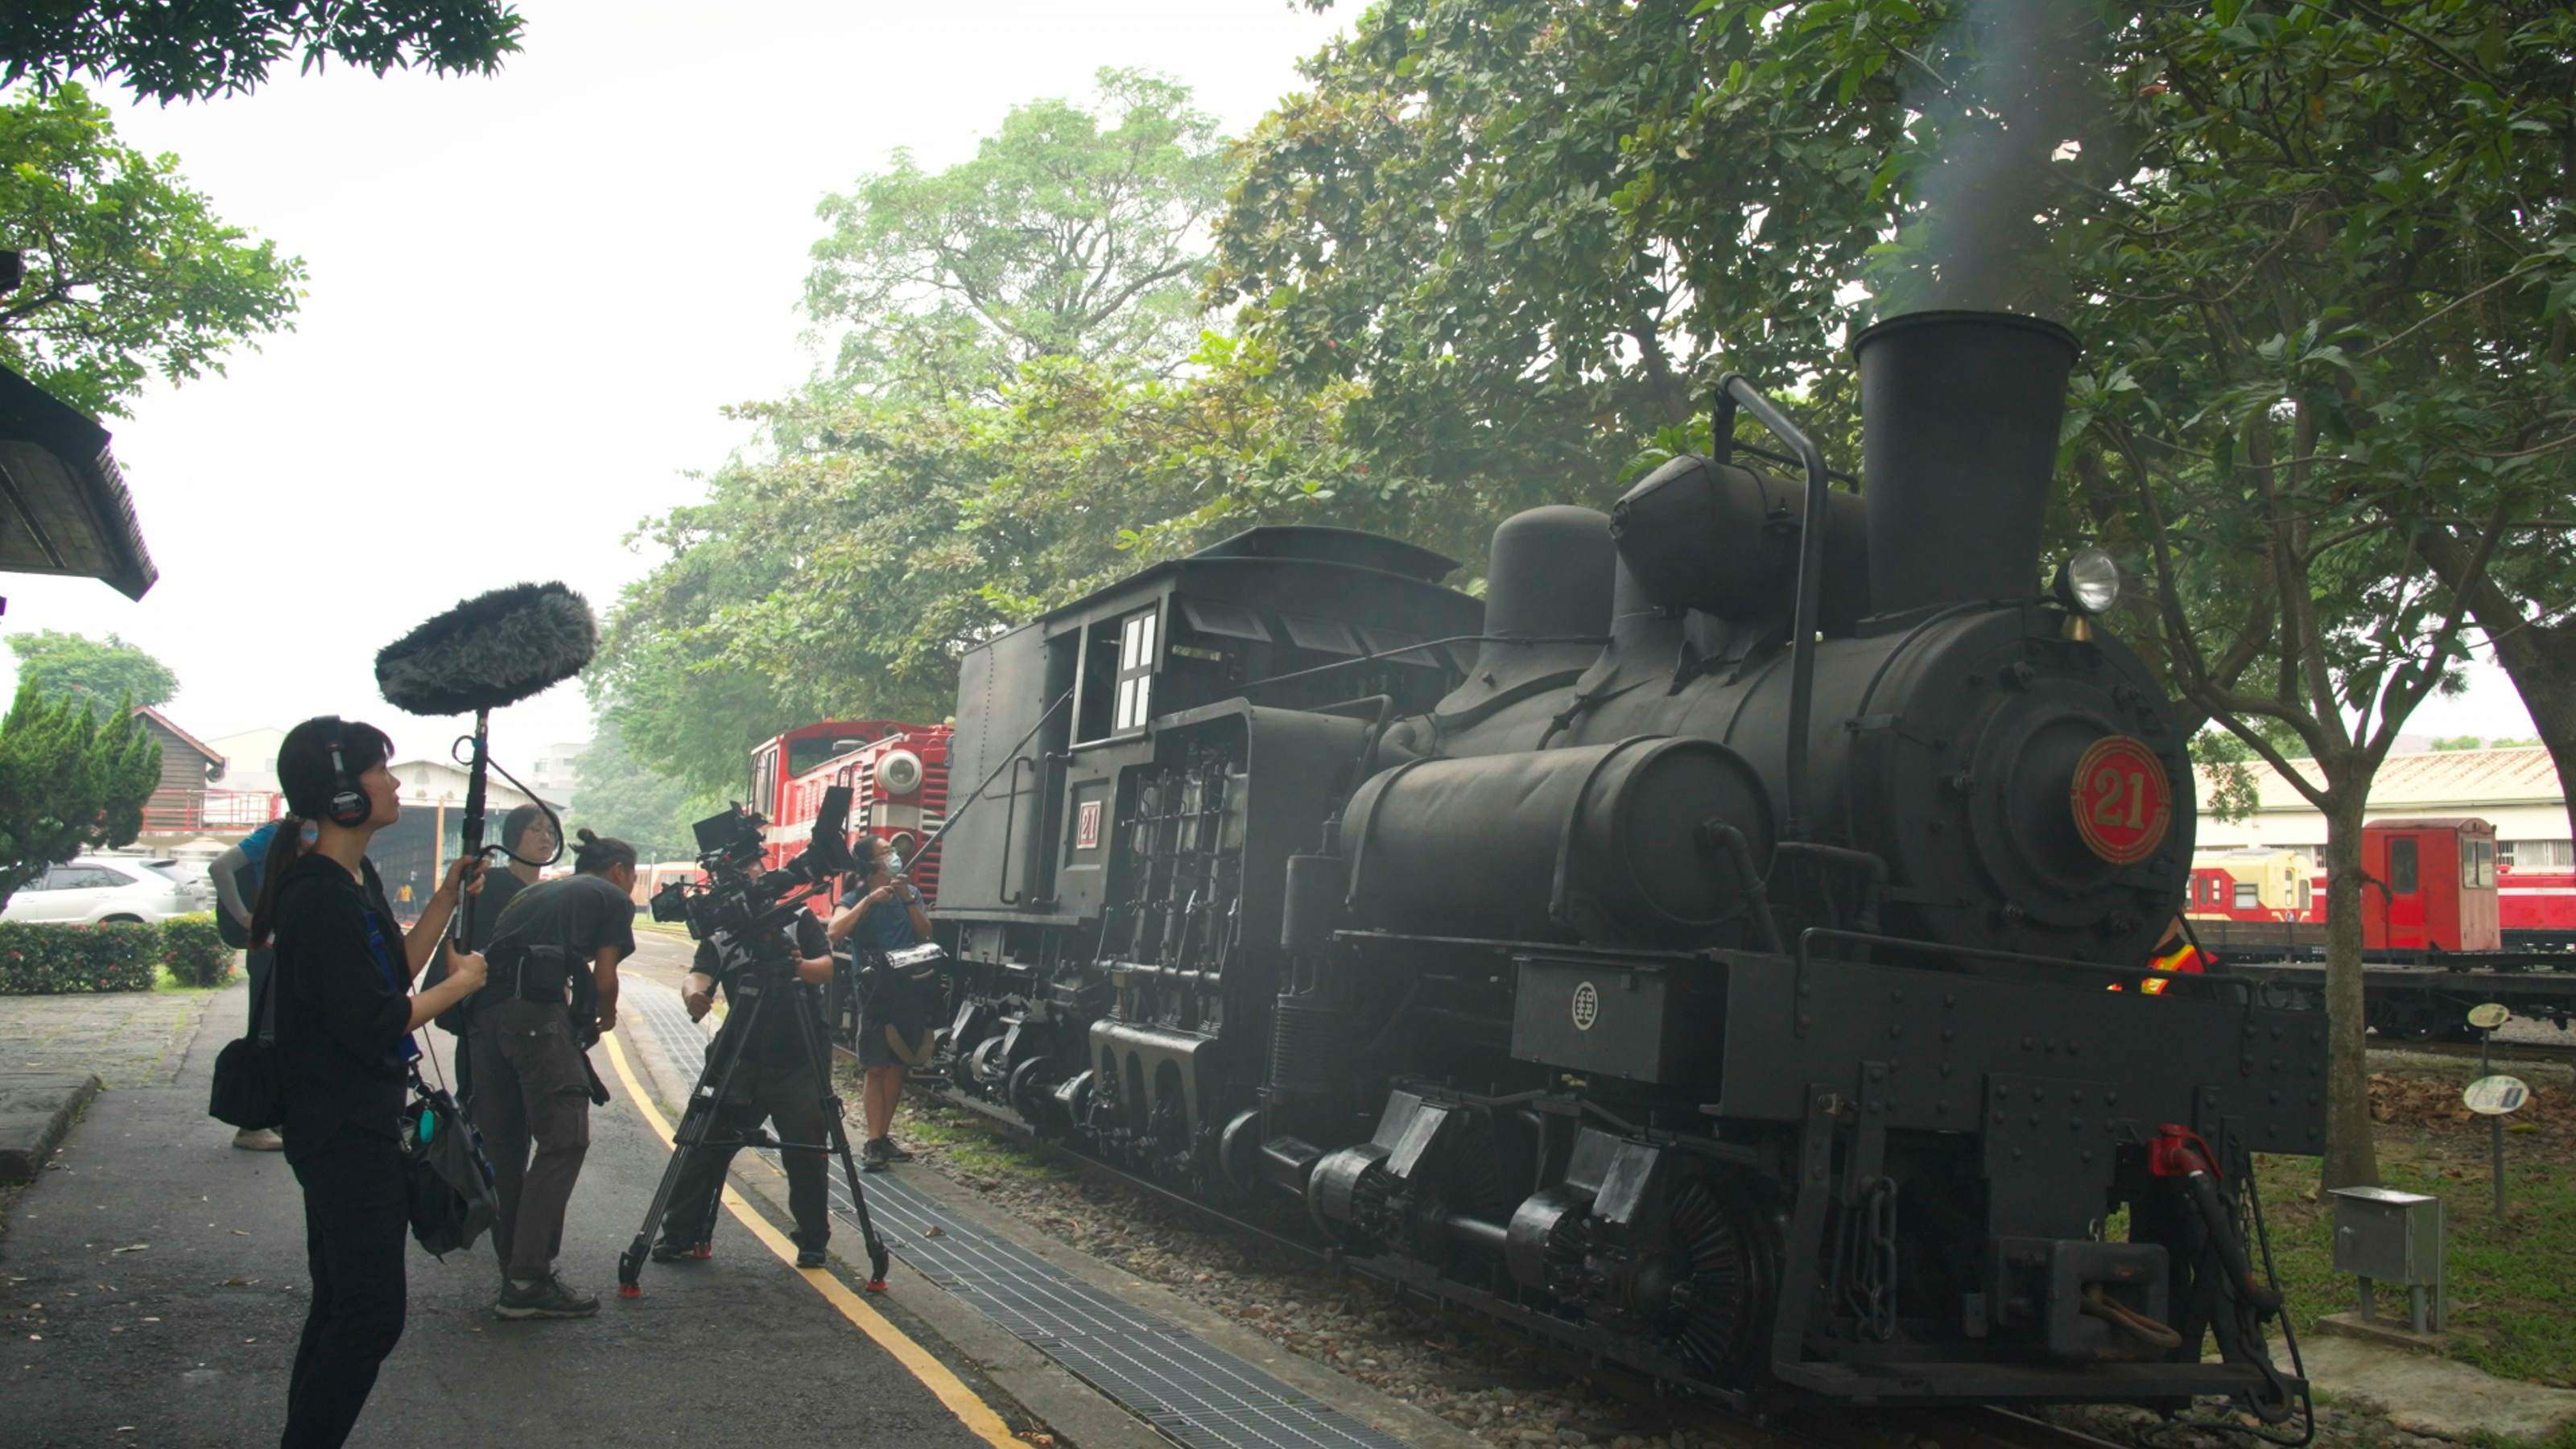 8K紀錄片《神木之森》修復百年蒸汽火車紀實  找到舊火車便當影像